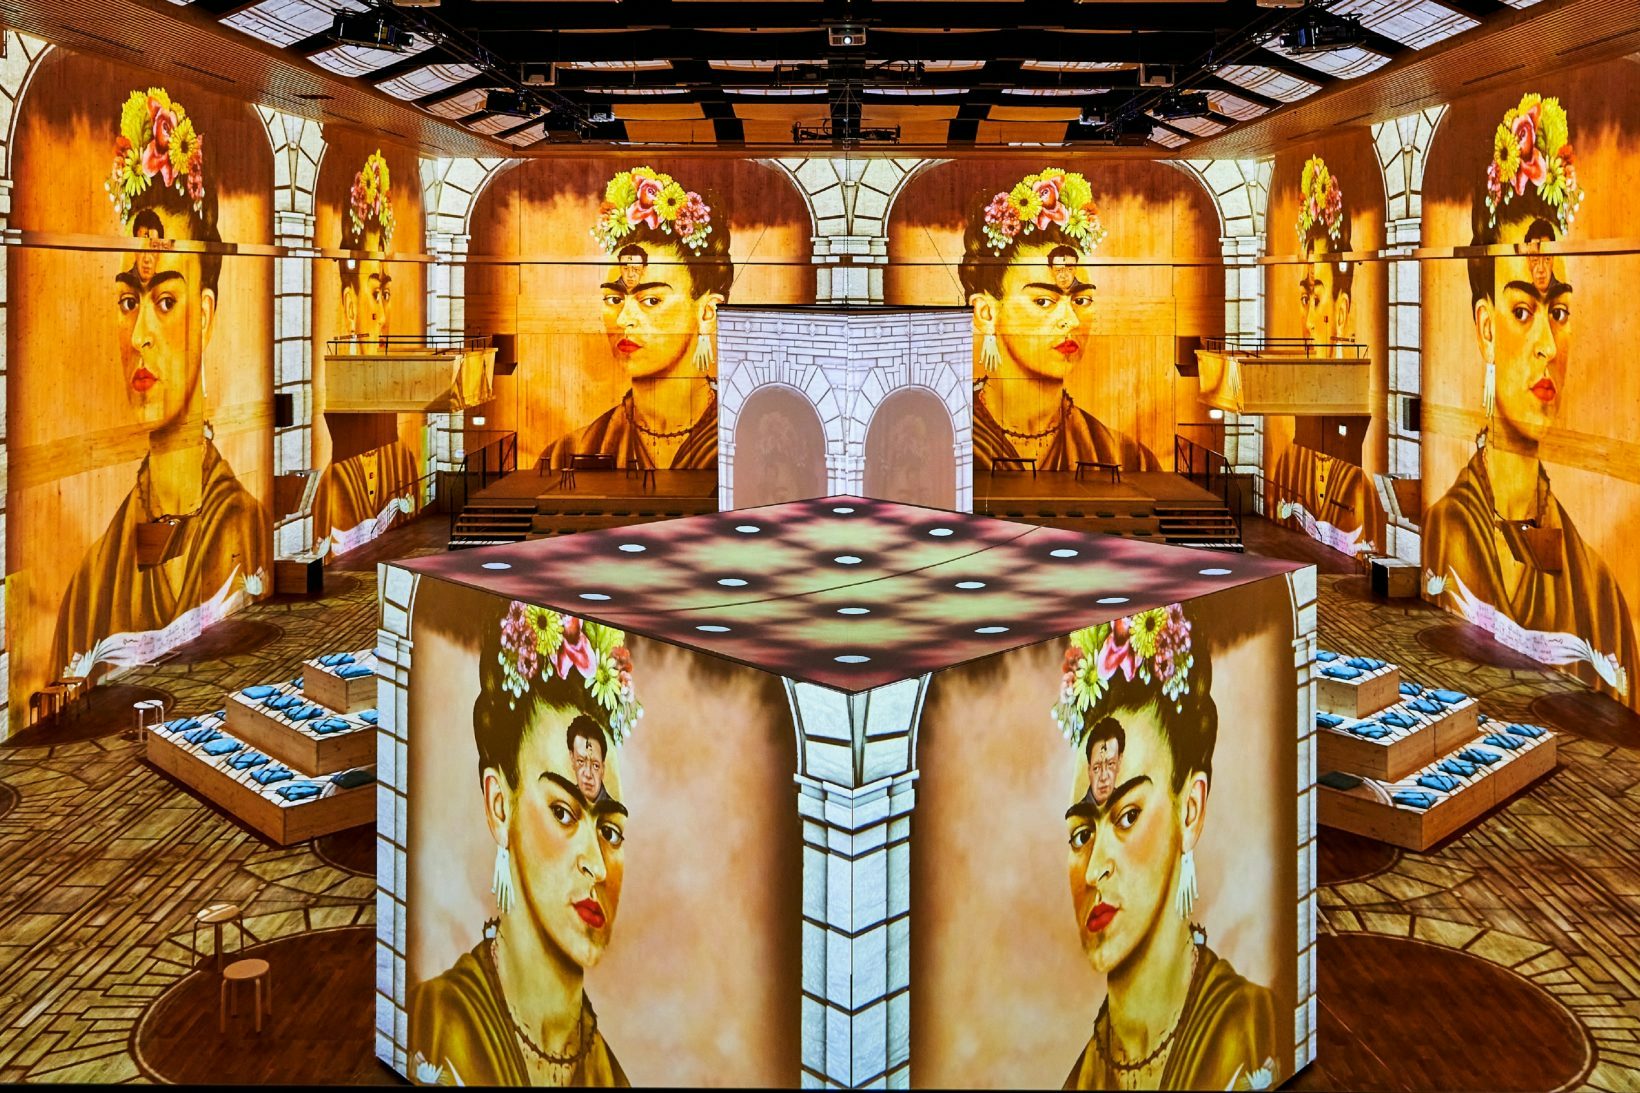 Frida Kahlo: her battles that resonate beyond her art